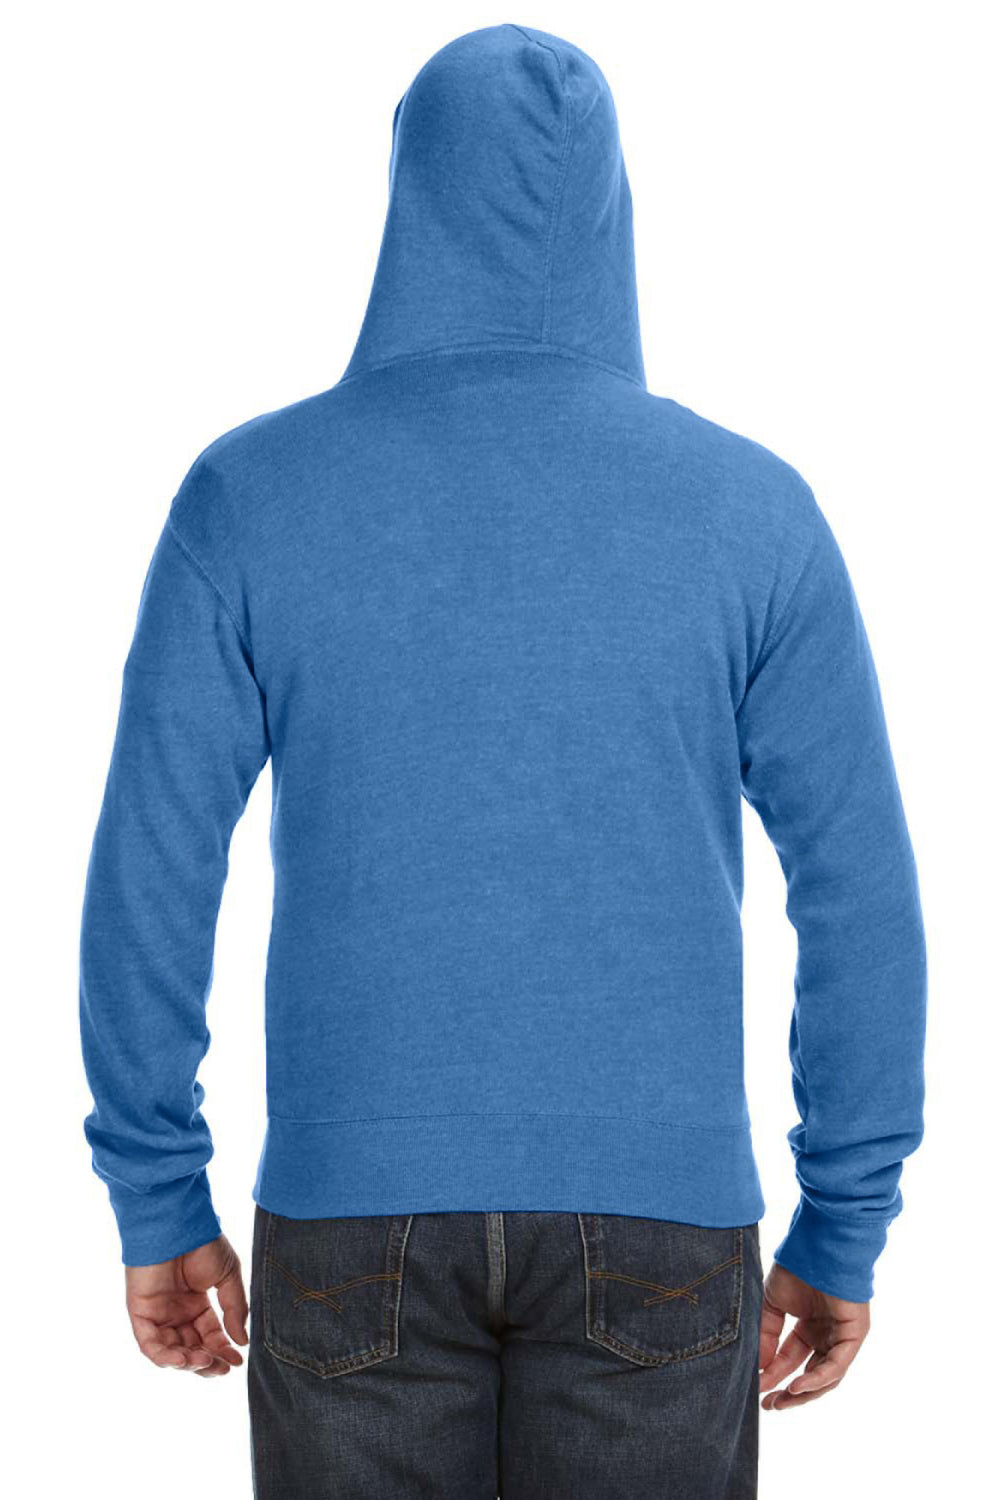 J America JA8872 Mens Fleece Full Zip Hooded Sweatshirt Hoodie Royal Blue Back